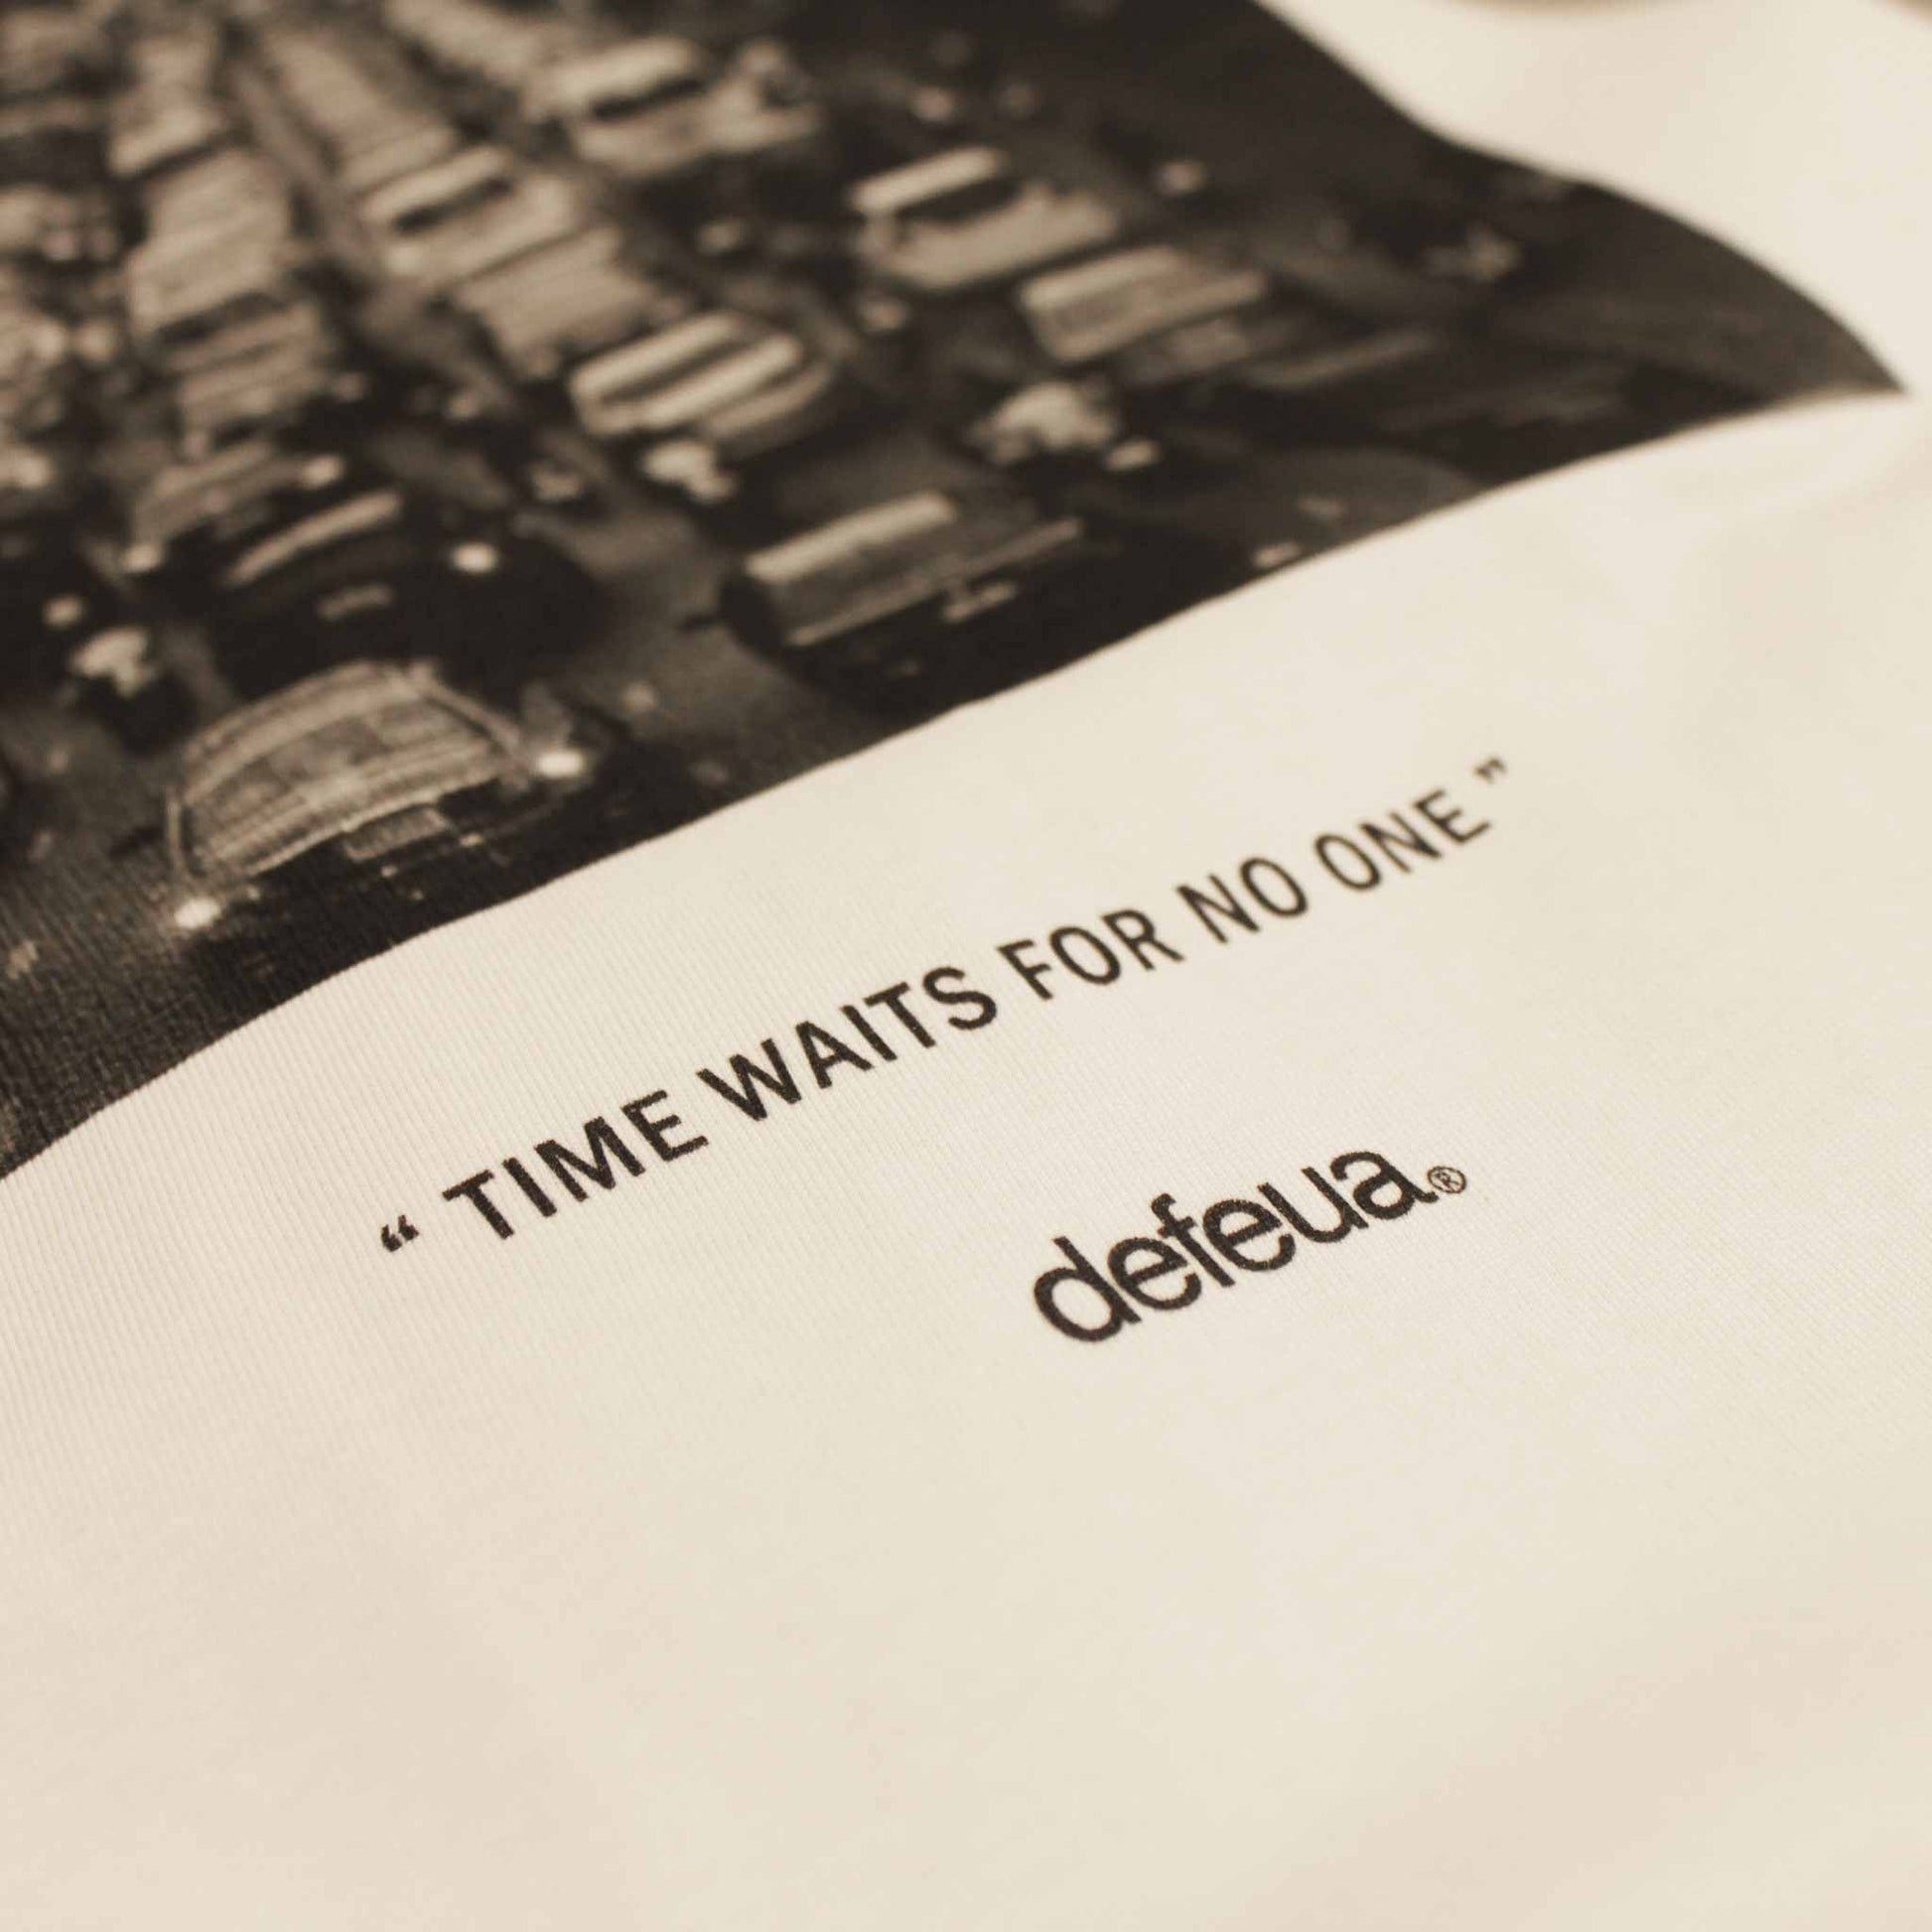 Defeua® STUCK t-shirt in cotone organico sul valore del tempo - dettaglio scritta "Time waits for no one"